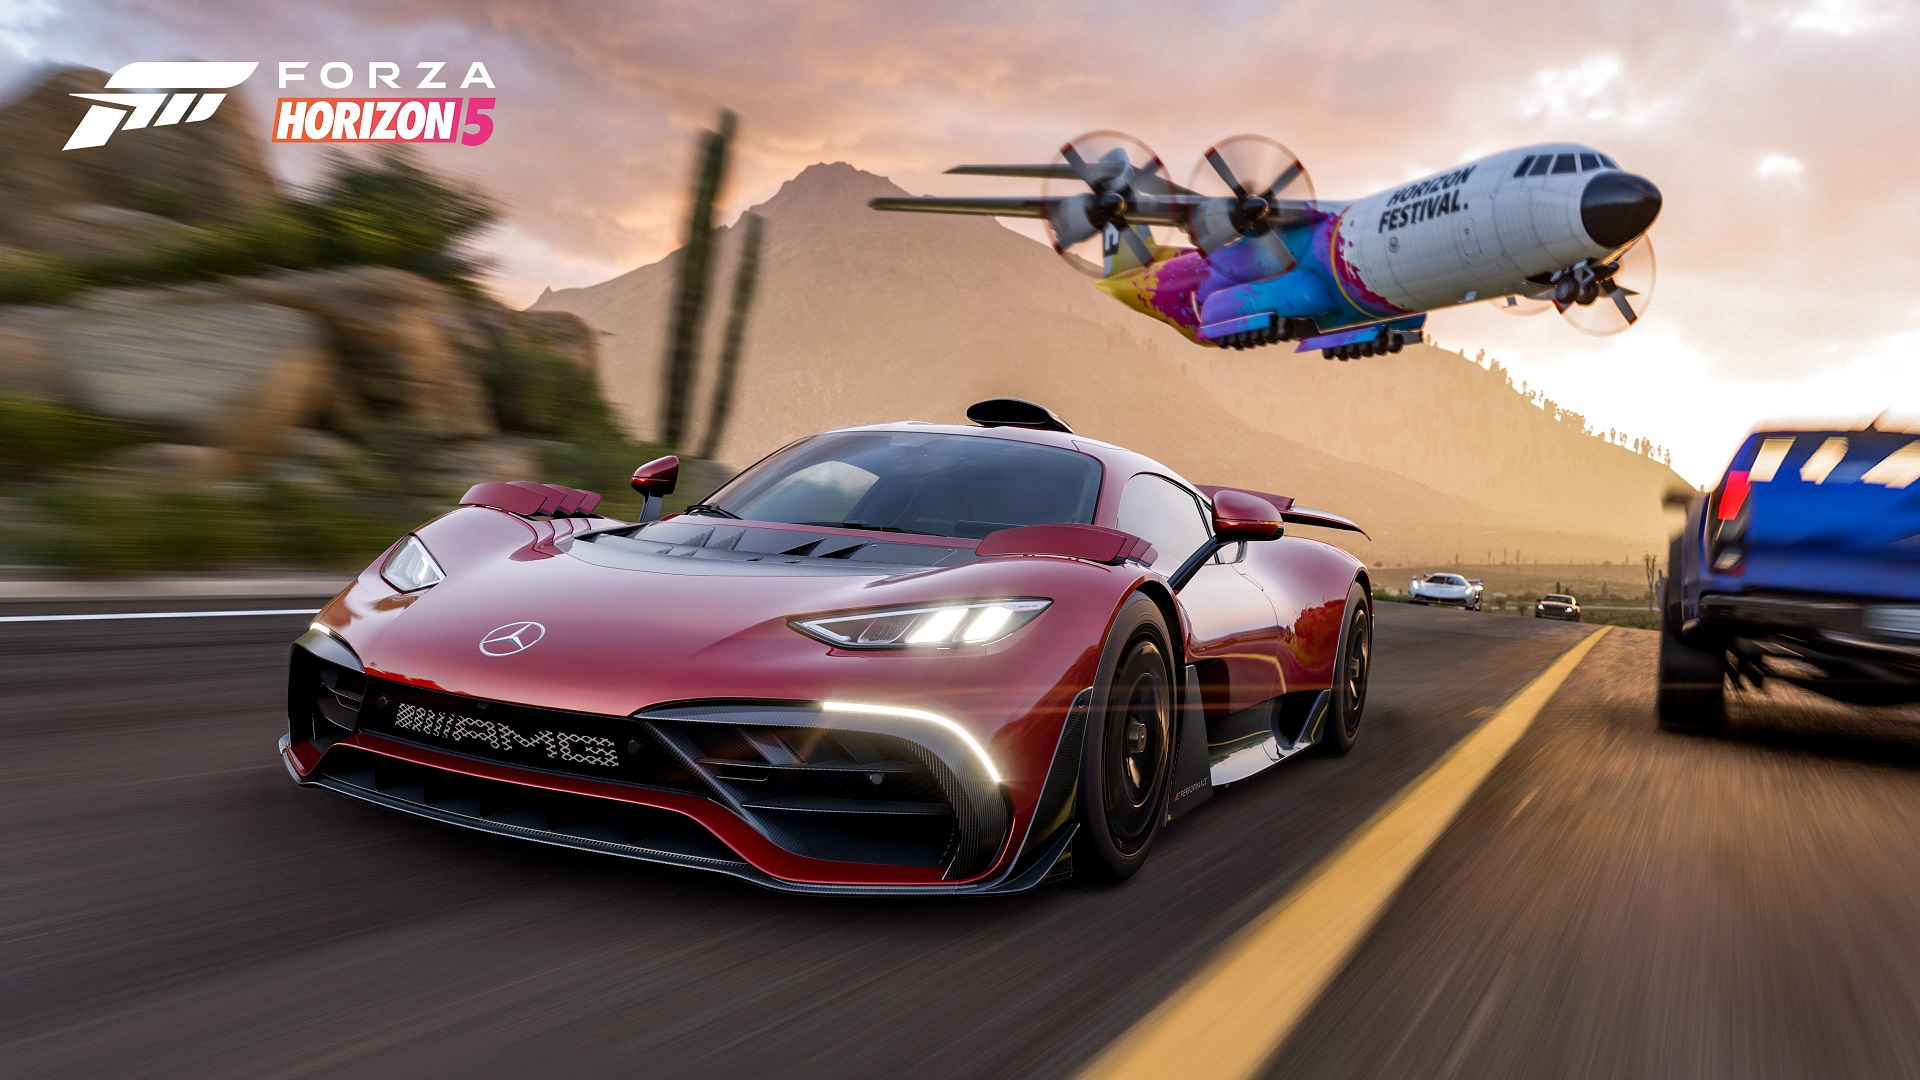 Forza Horizon 5 Best Cars For Road Racing Dirt Racing And Free Roam Gamesradar